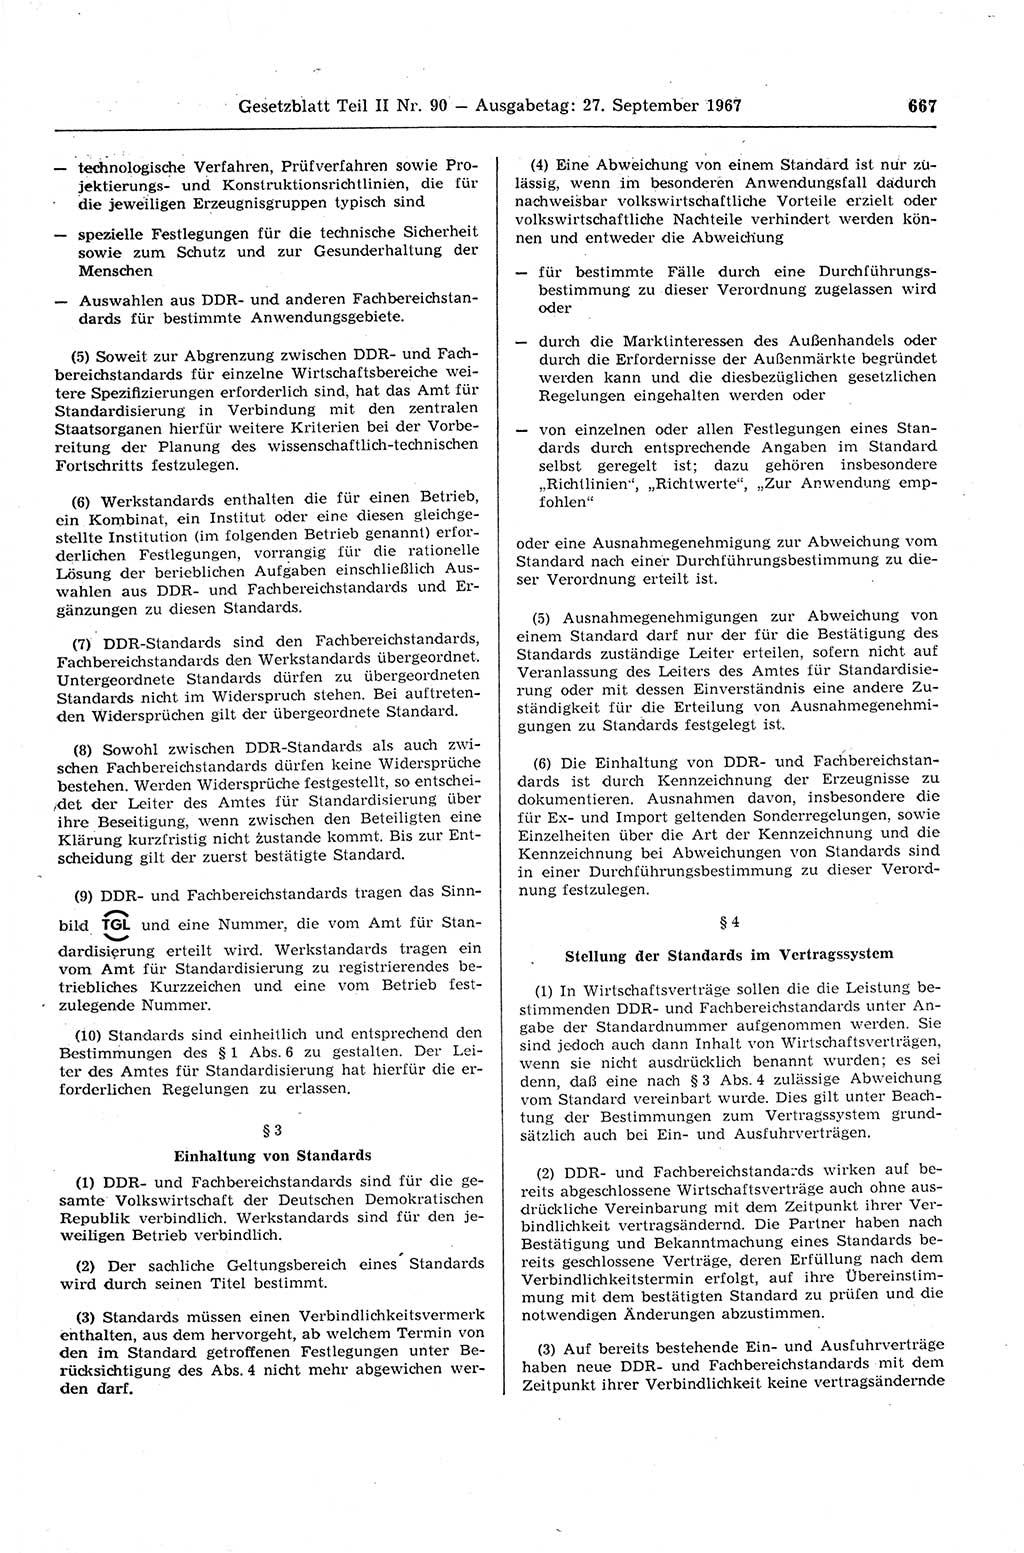 Gesetzblatt (GBl.) der Deutschen Demokratischen Republik (DDR) Teil ⅠⅠ 1967, Seite 667 (GBl. DDR ⅠⅠ 1967, S. 667)